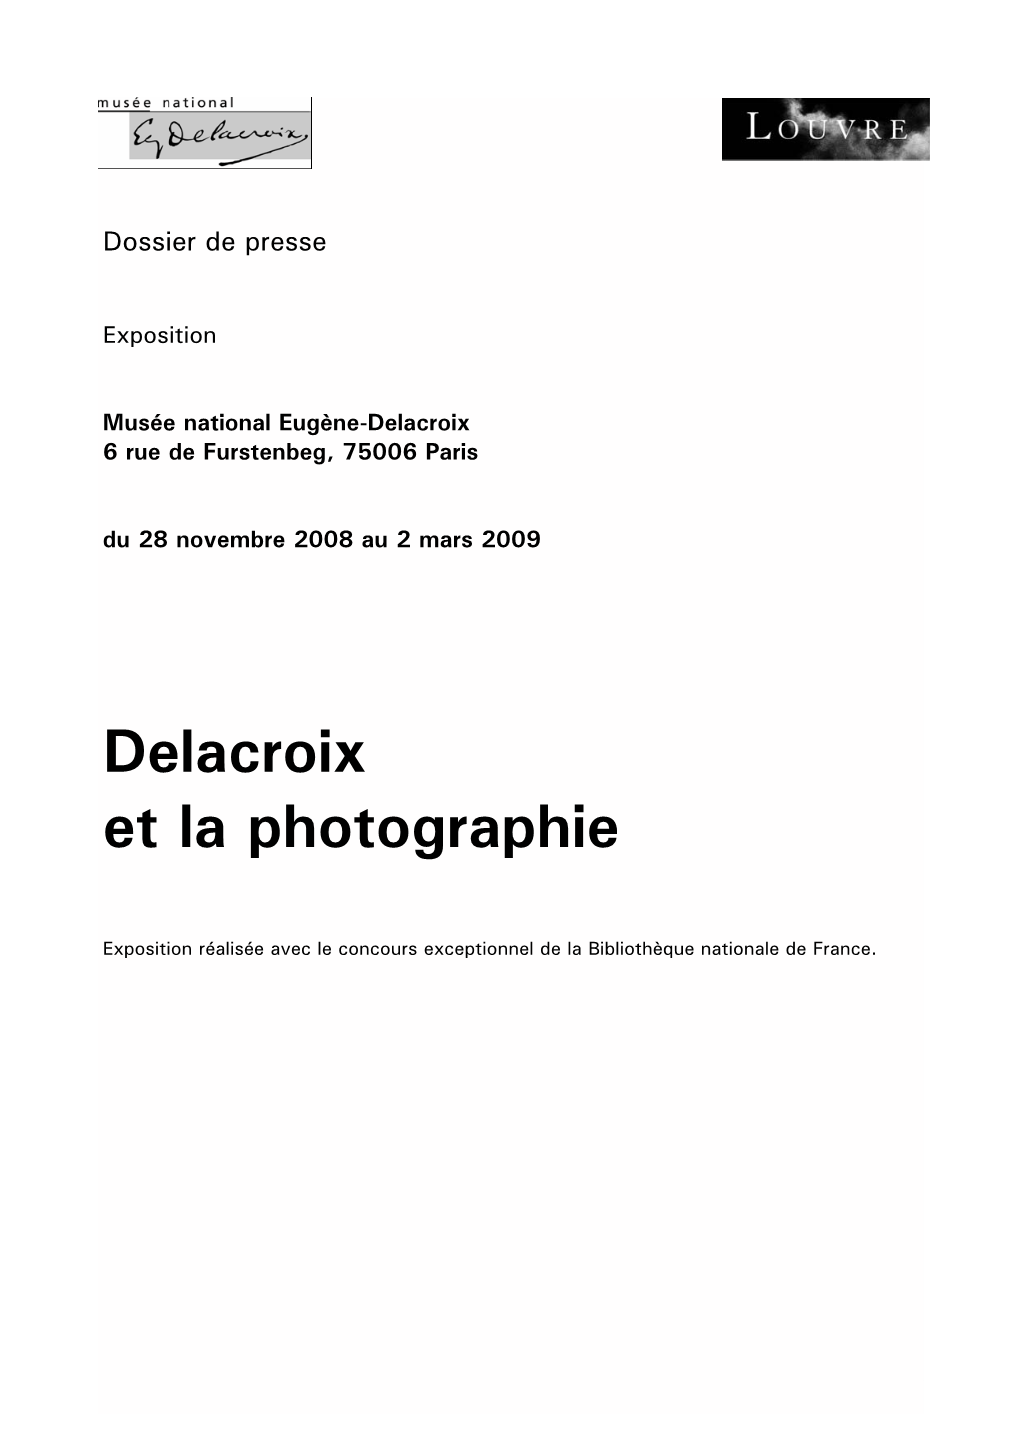 Delacroix Et La Photographie